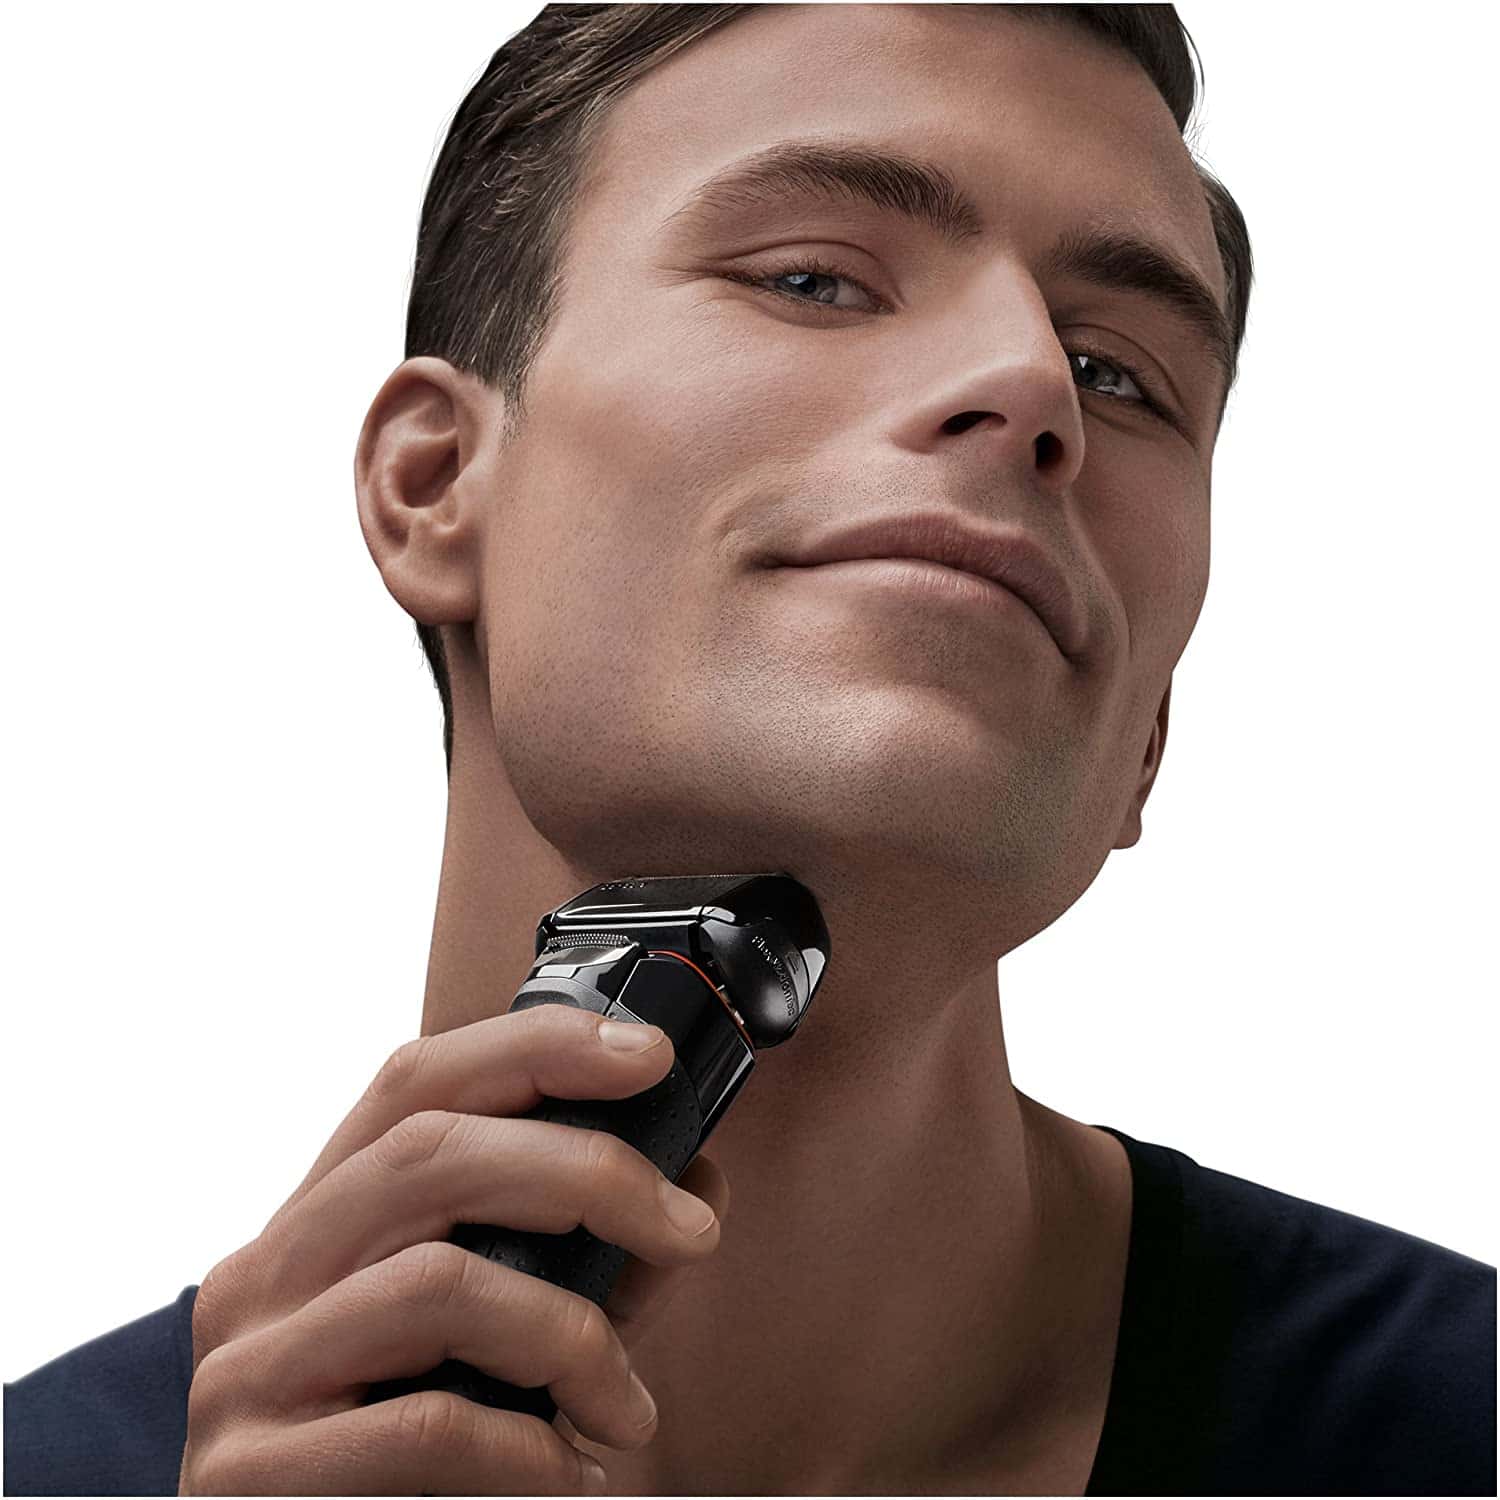 Braun 5030 Series 5 - Afeitadora Eléctrica Hombre, Afeitadora Barba, Recortador de Precisión Extraíble, Recargable e Inalámbrica